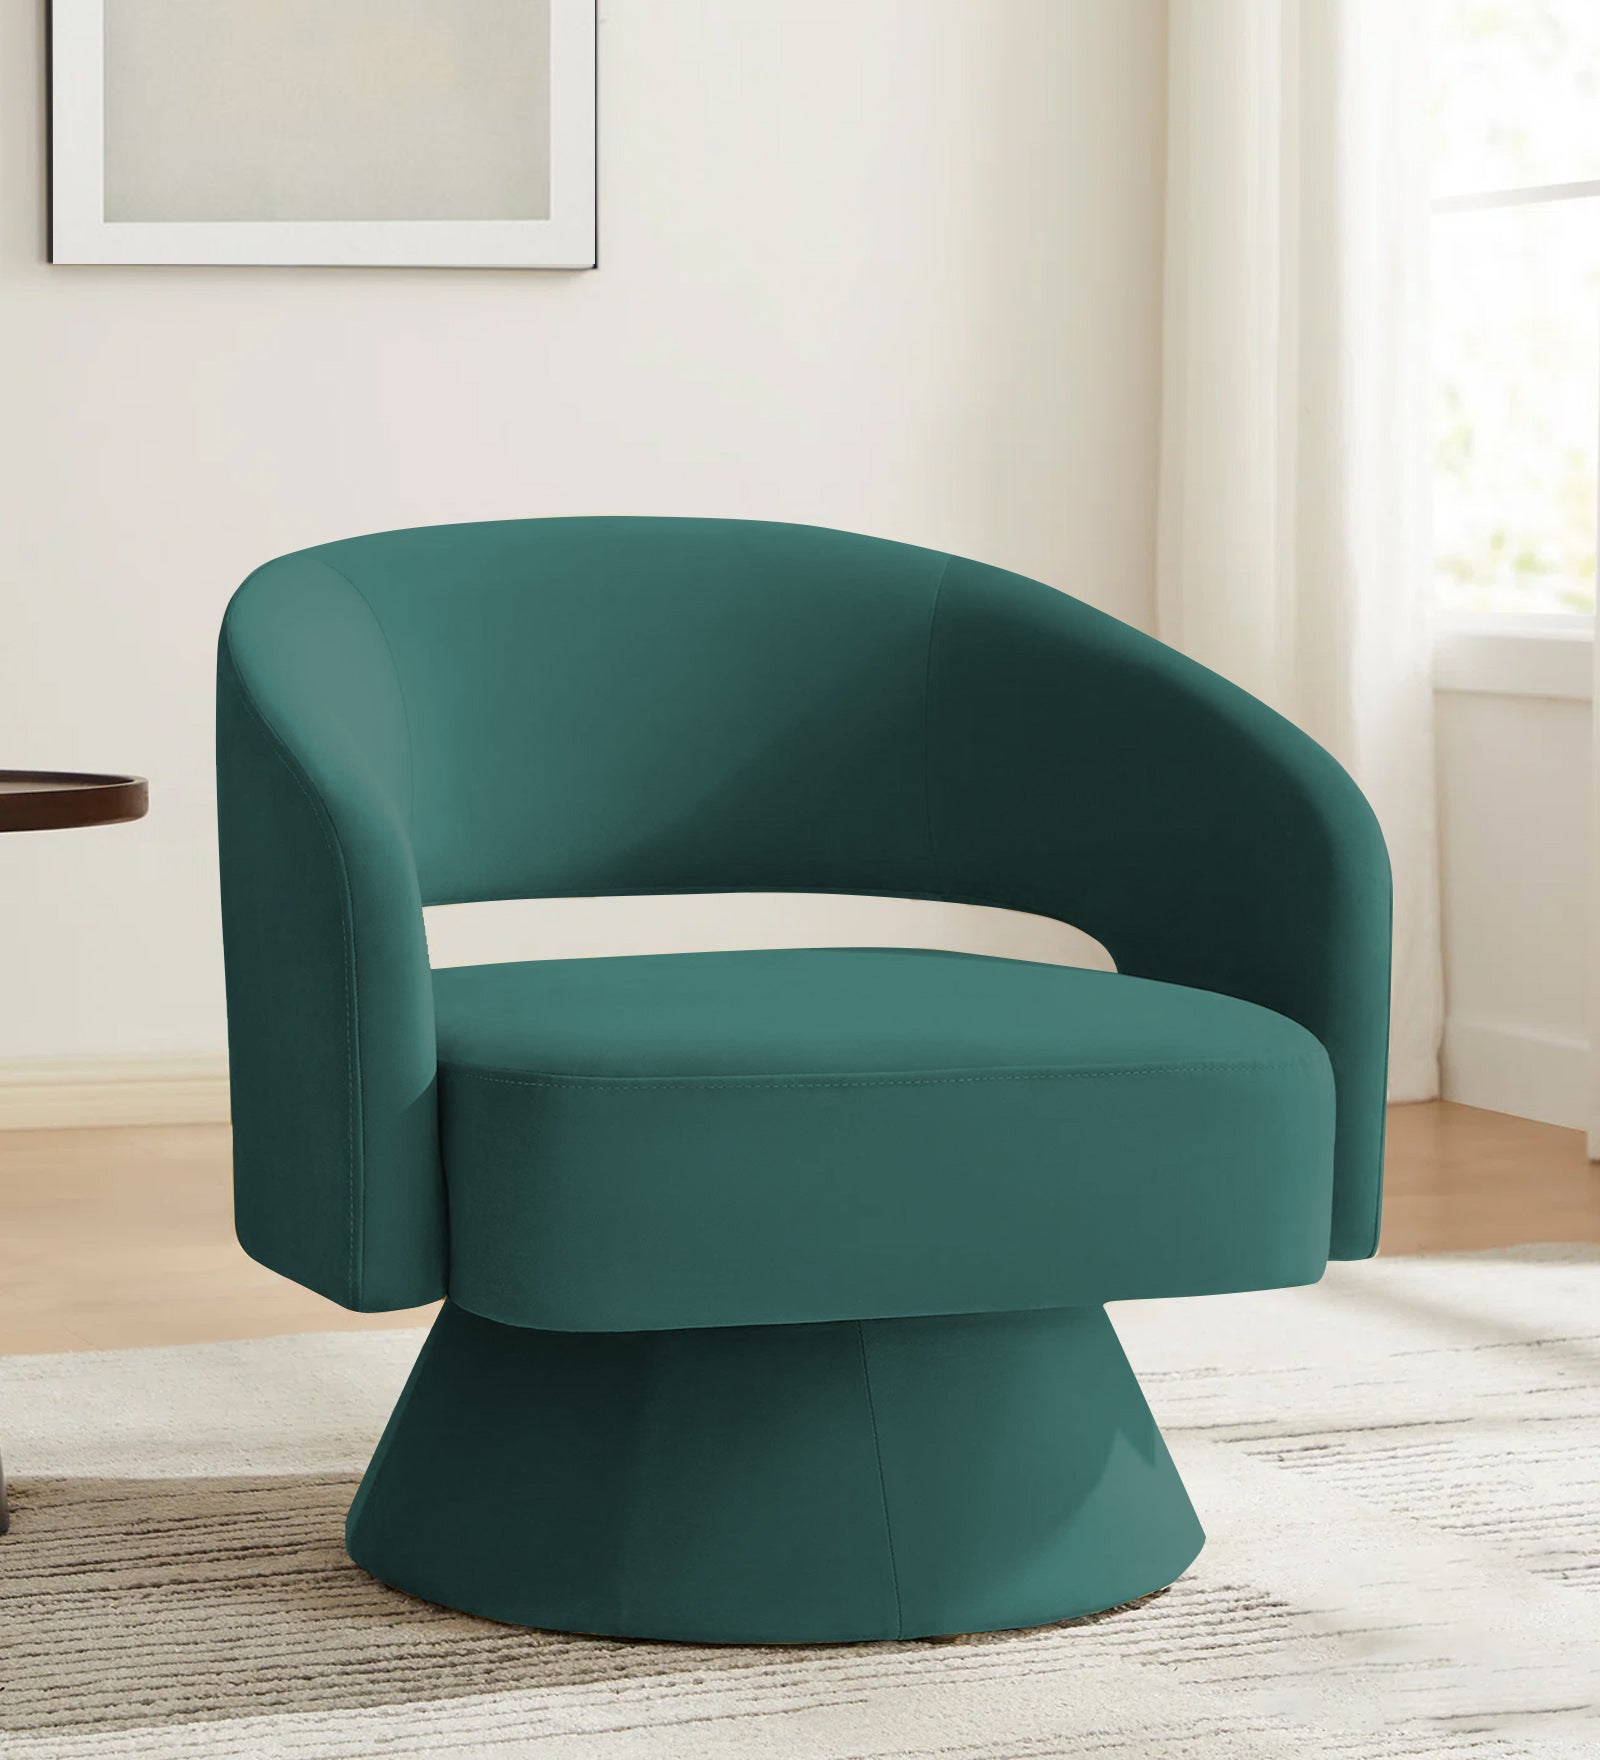 Pendra Velvet Swivel Chair in Pine Green Colour